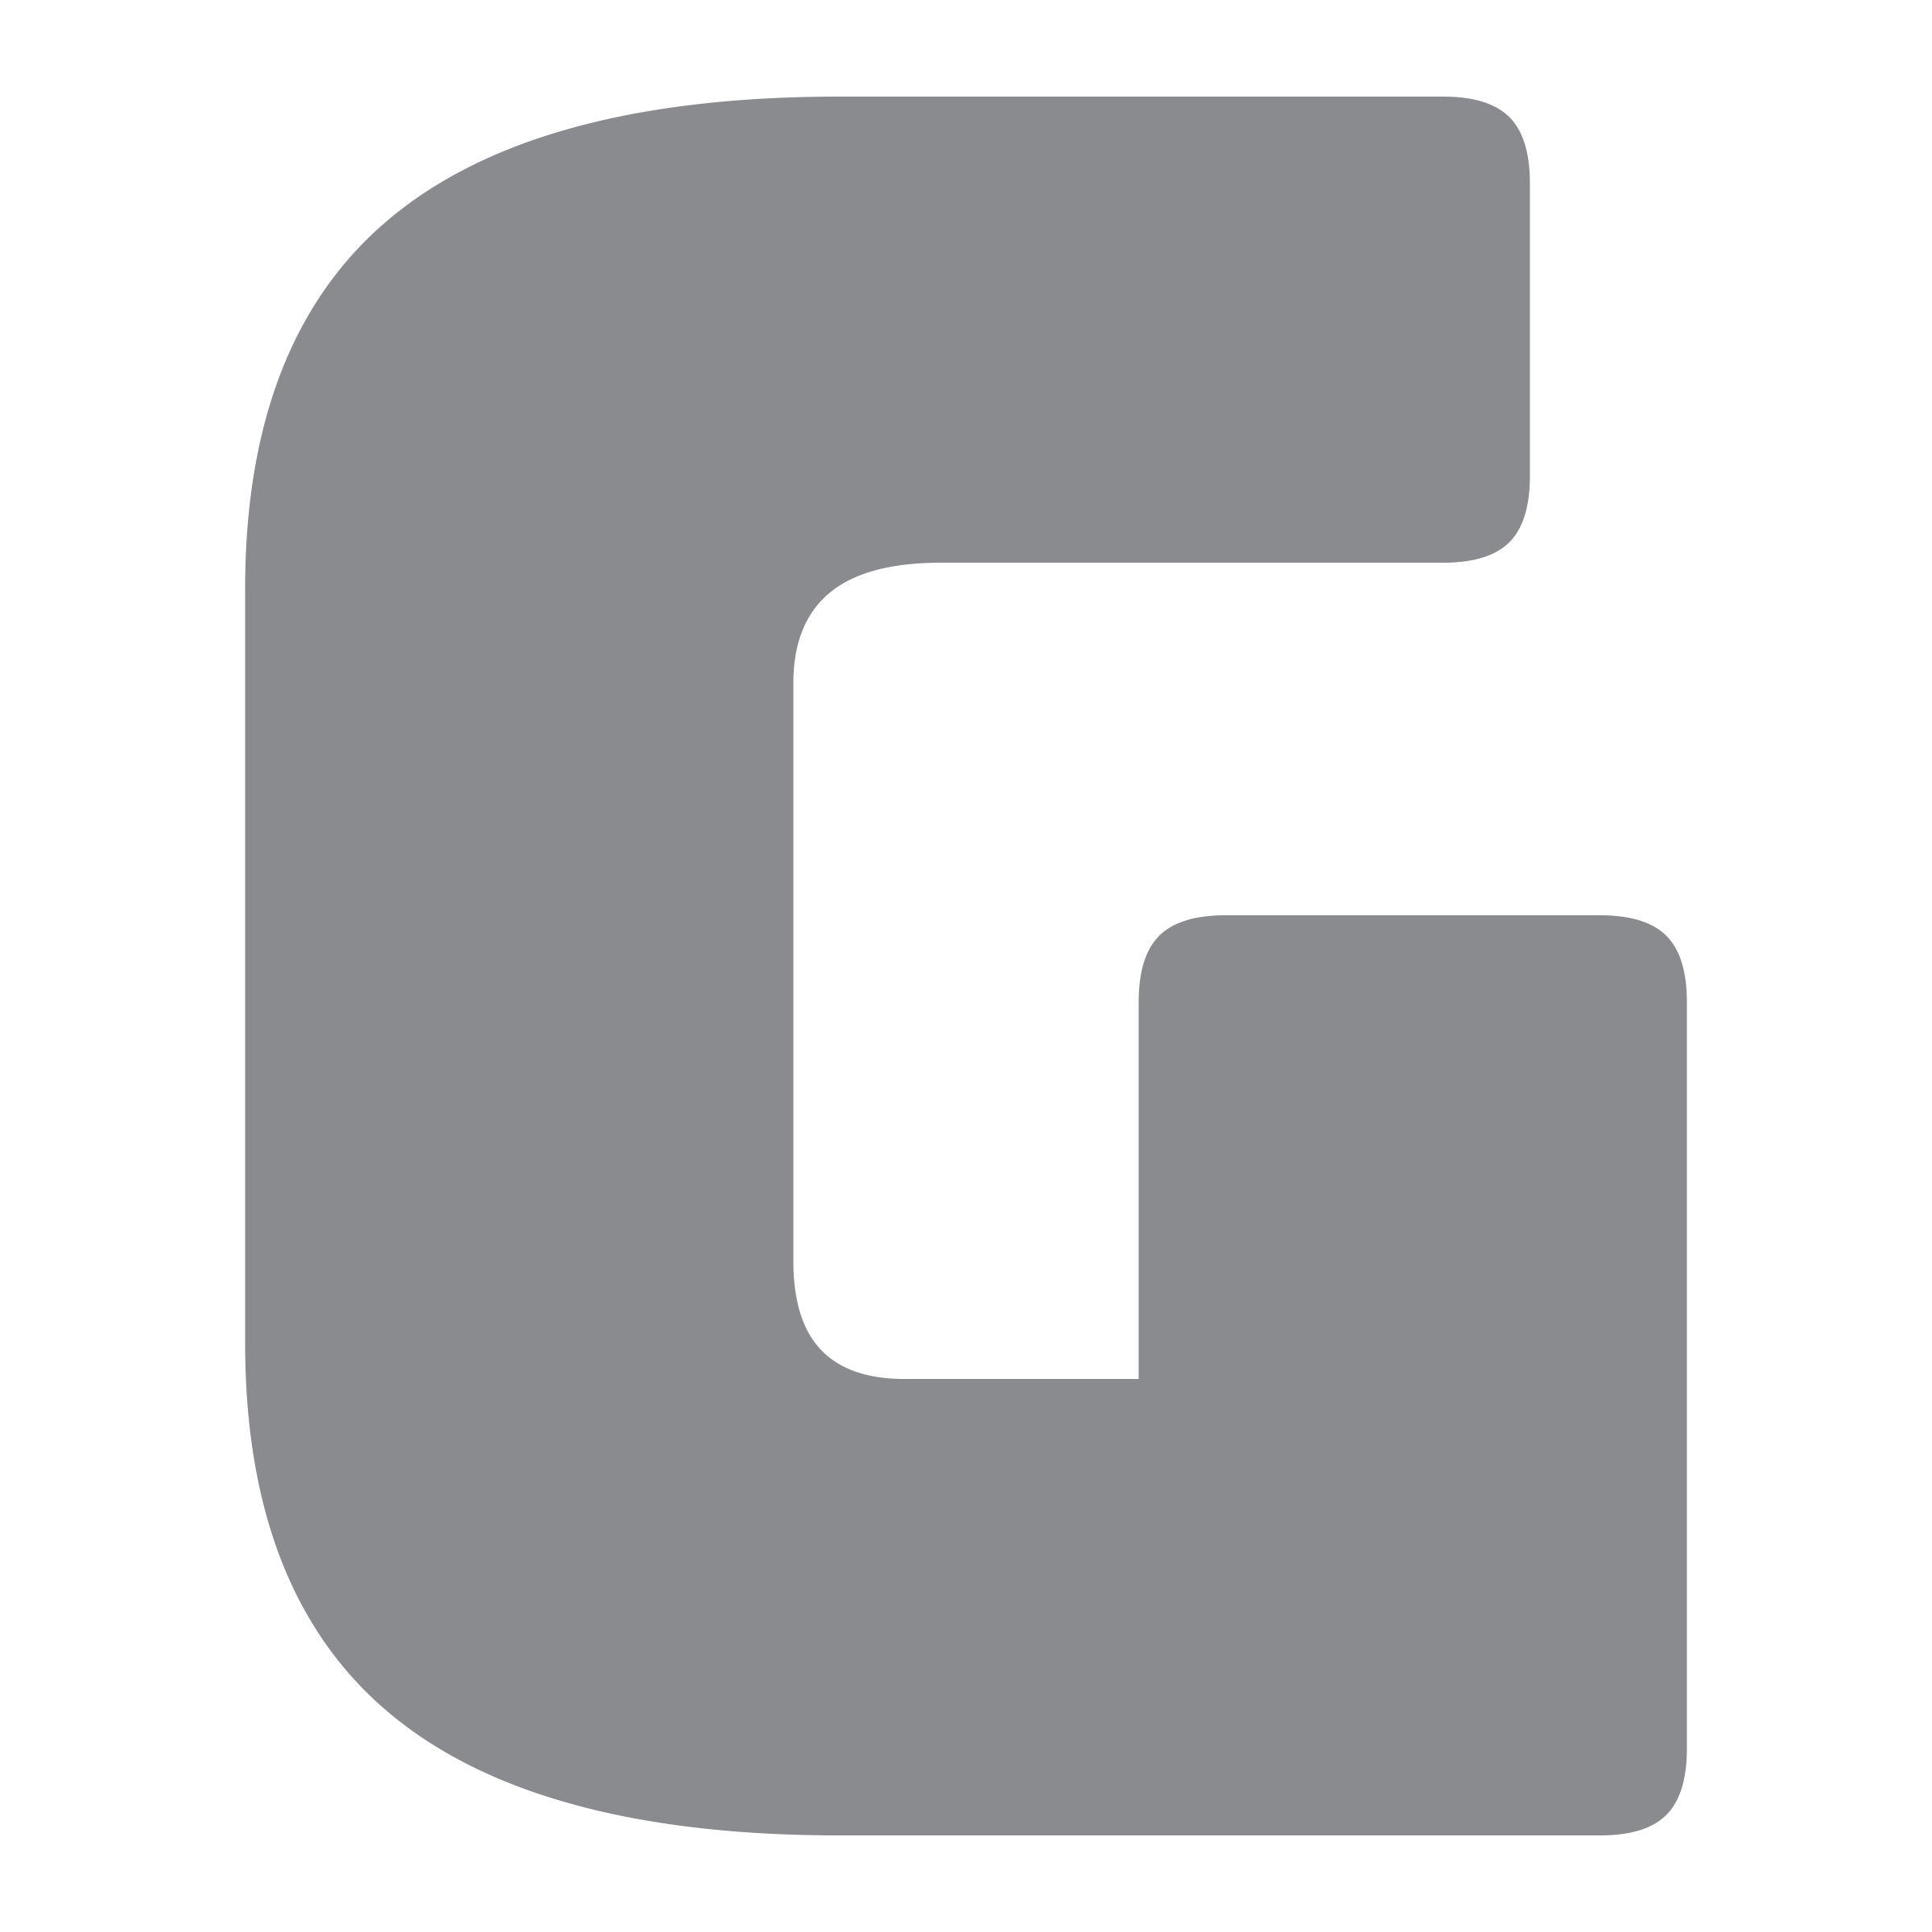 g logo images